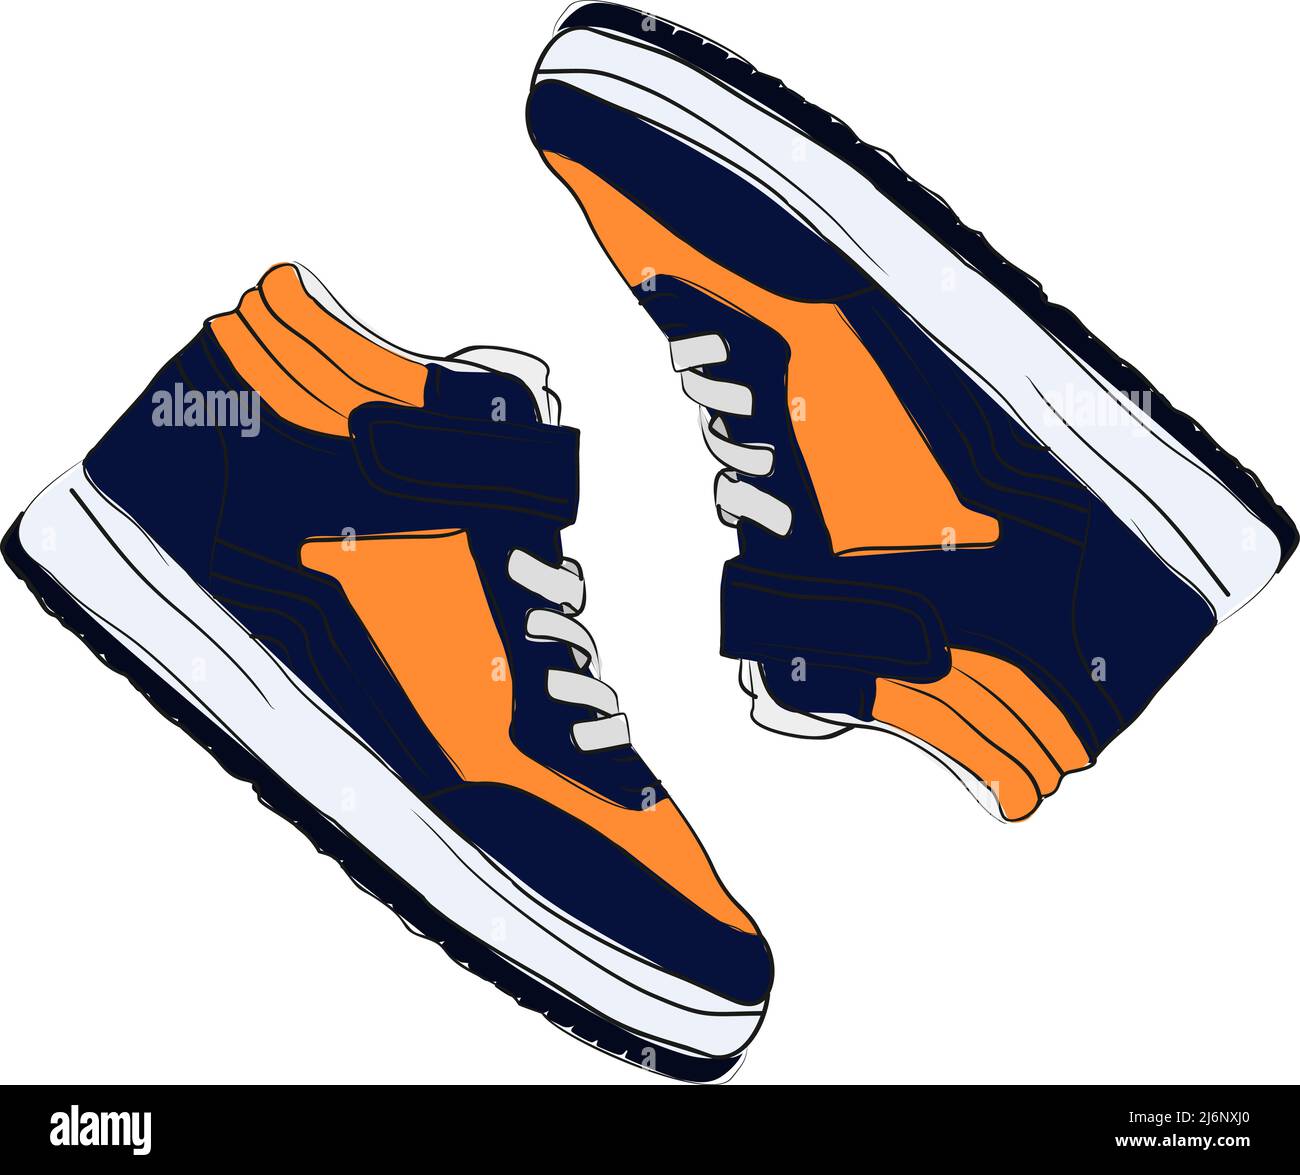 Illustrazione colorata delle sneakers di moda, una sneaker con vista dall'alto, design piatto, scarpe da disegno Sketch Concept, colori arancione e blu navy Illustrazione Vettoriale